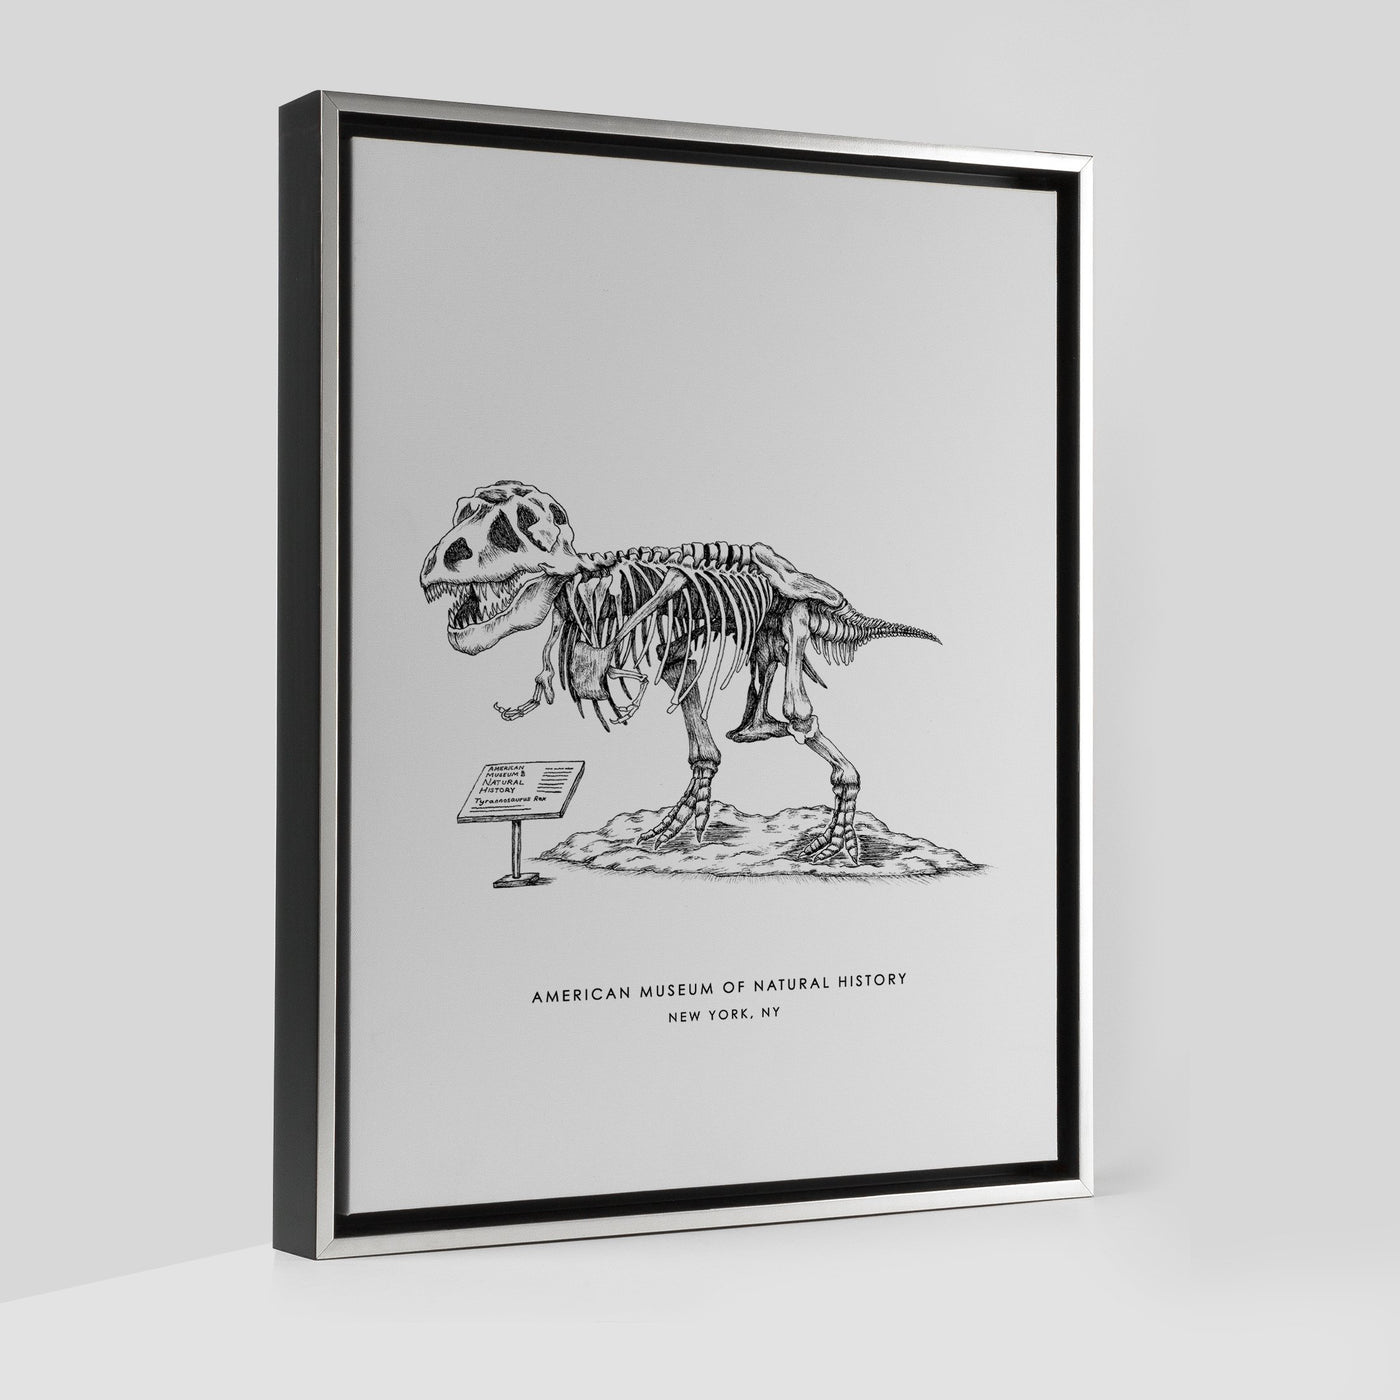 New York Dinosaur Print Gallery Print Black Frame Canvas / 8x10 / Silver Frame Katie Kime